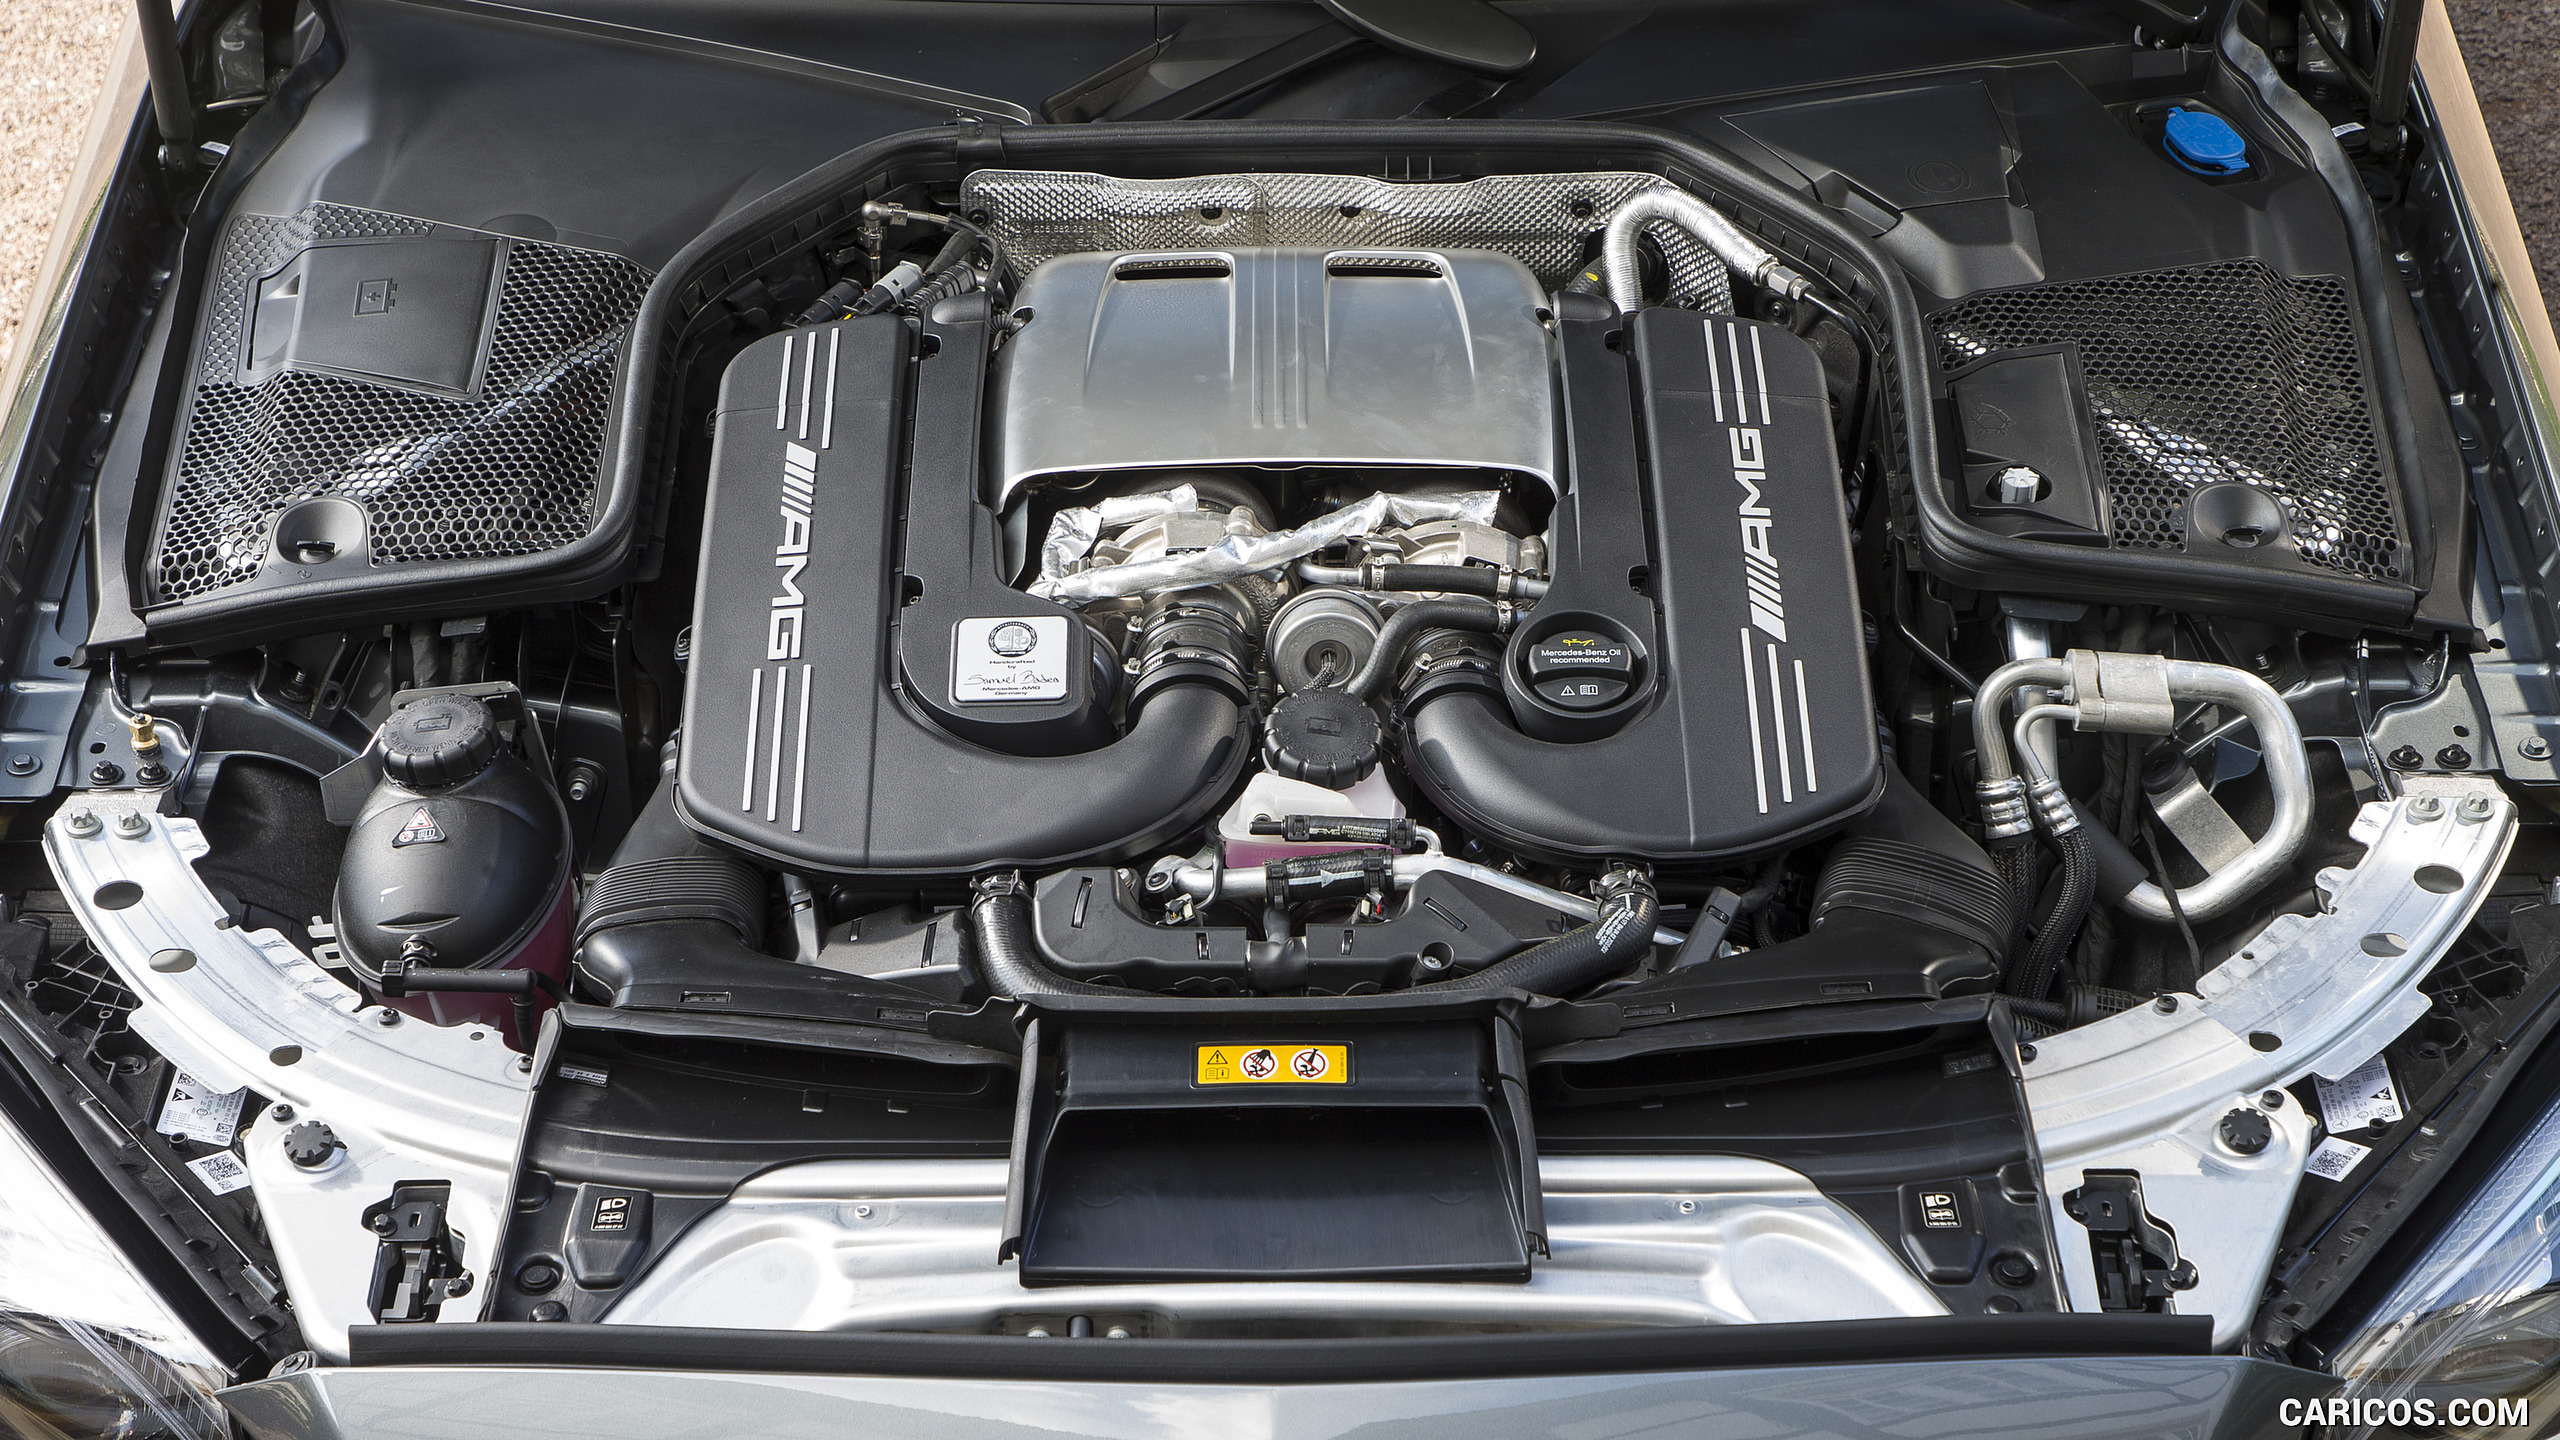 2019 Mercedes-AMG C 63 S Cabrio - Engine, #65 of 74